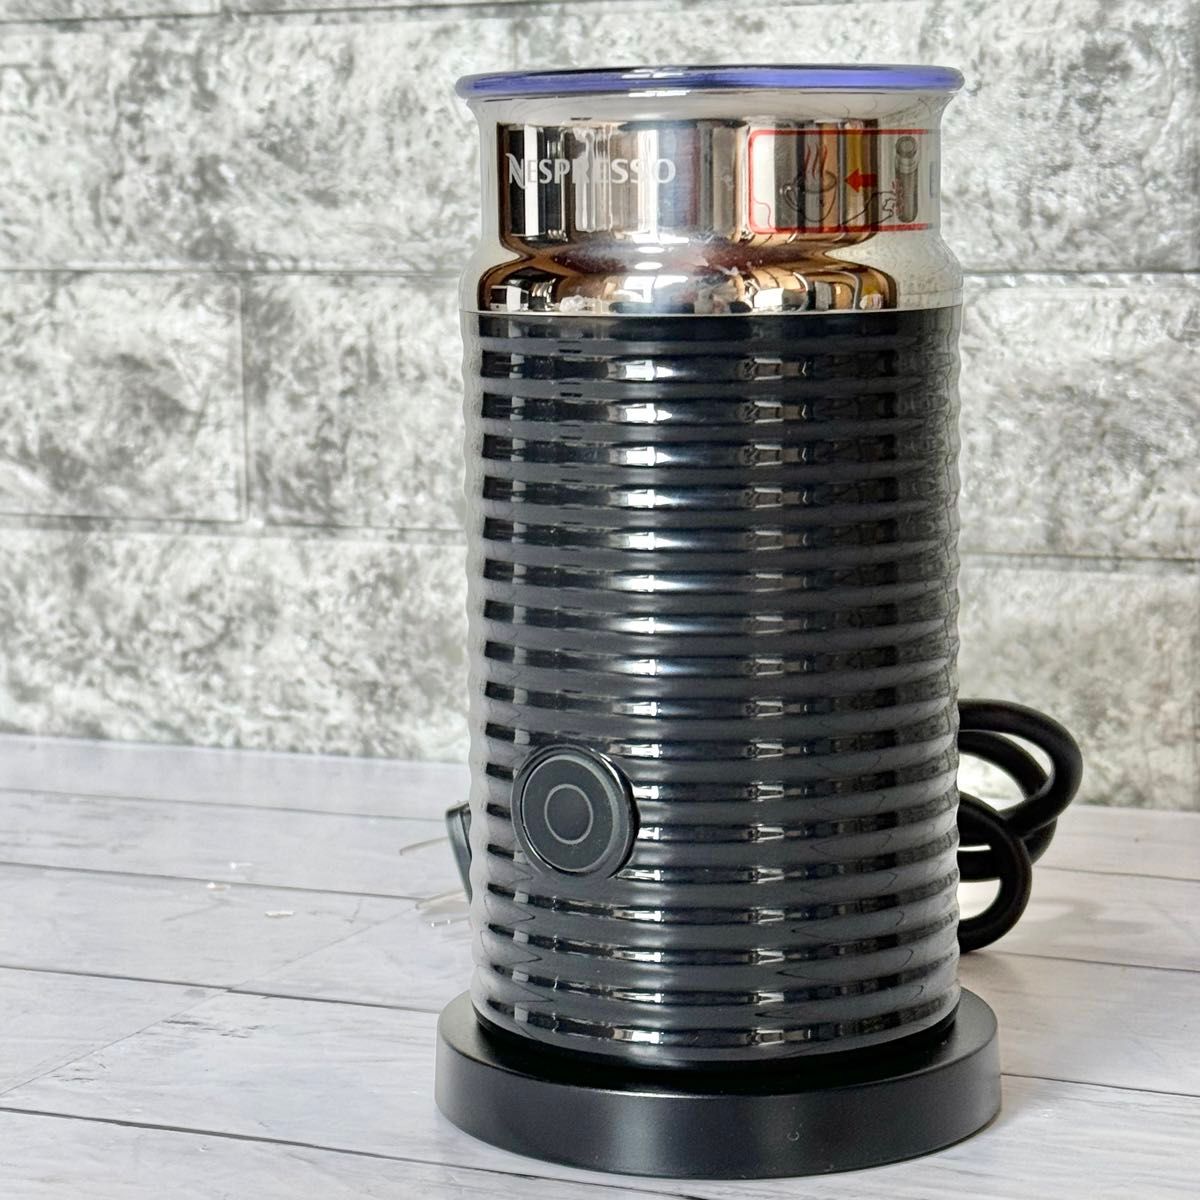 2015年製 Nespresso エアロチーノ3 ミルク泡立て器